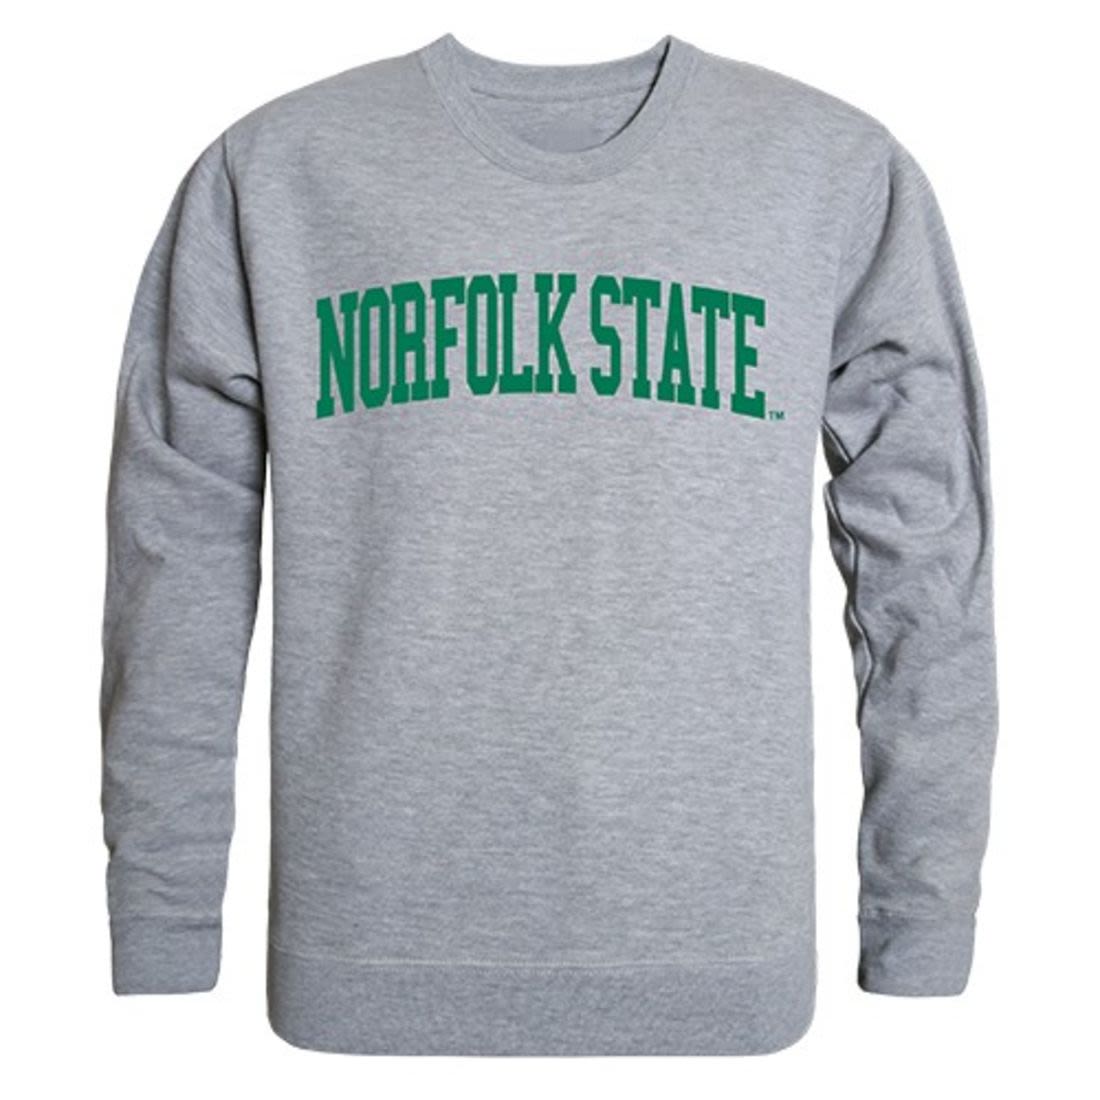 NSU Norfolk State University Game Day Crewneck Pullover Sweatshirt Sweater Heather Grey-Campus-Wardrobe